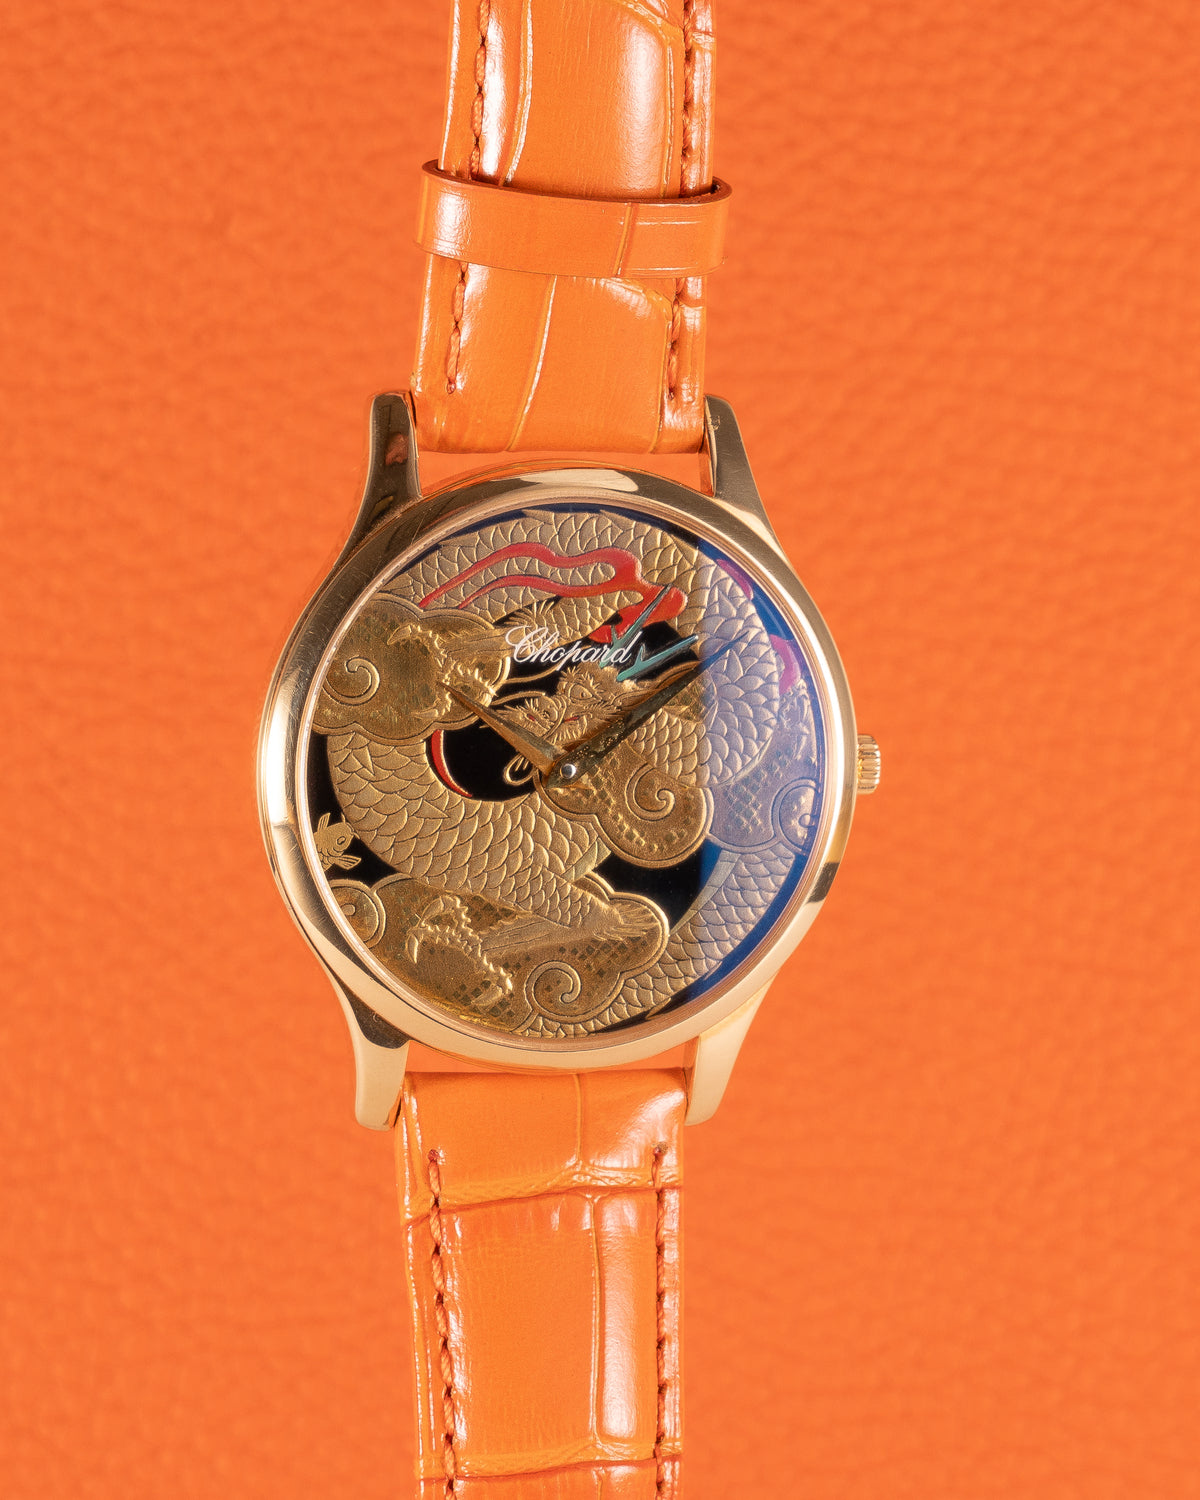 Chopard 161902-5044 Dragon by Kiichiro Masumura, Hand Finished Lacquer dial 2015